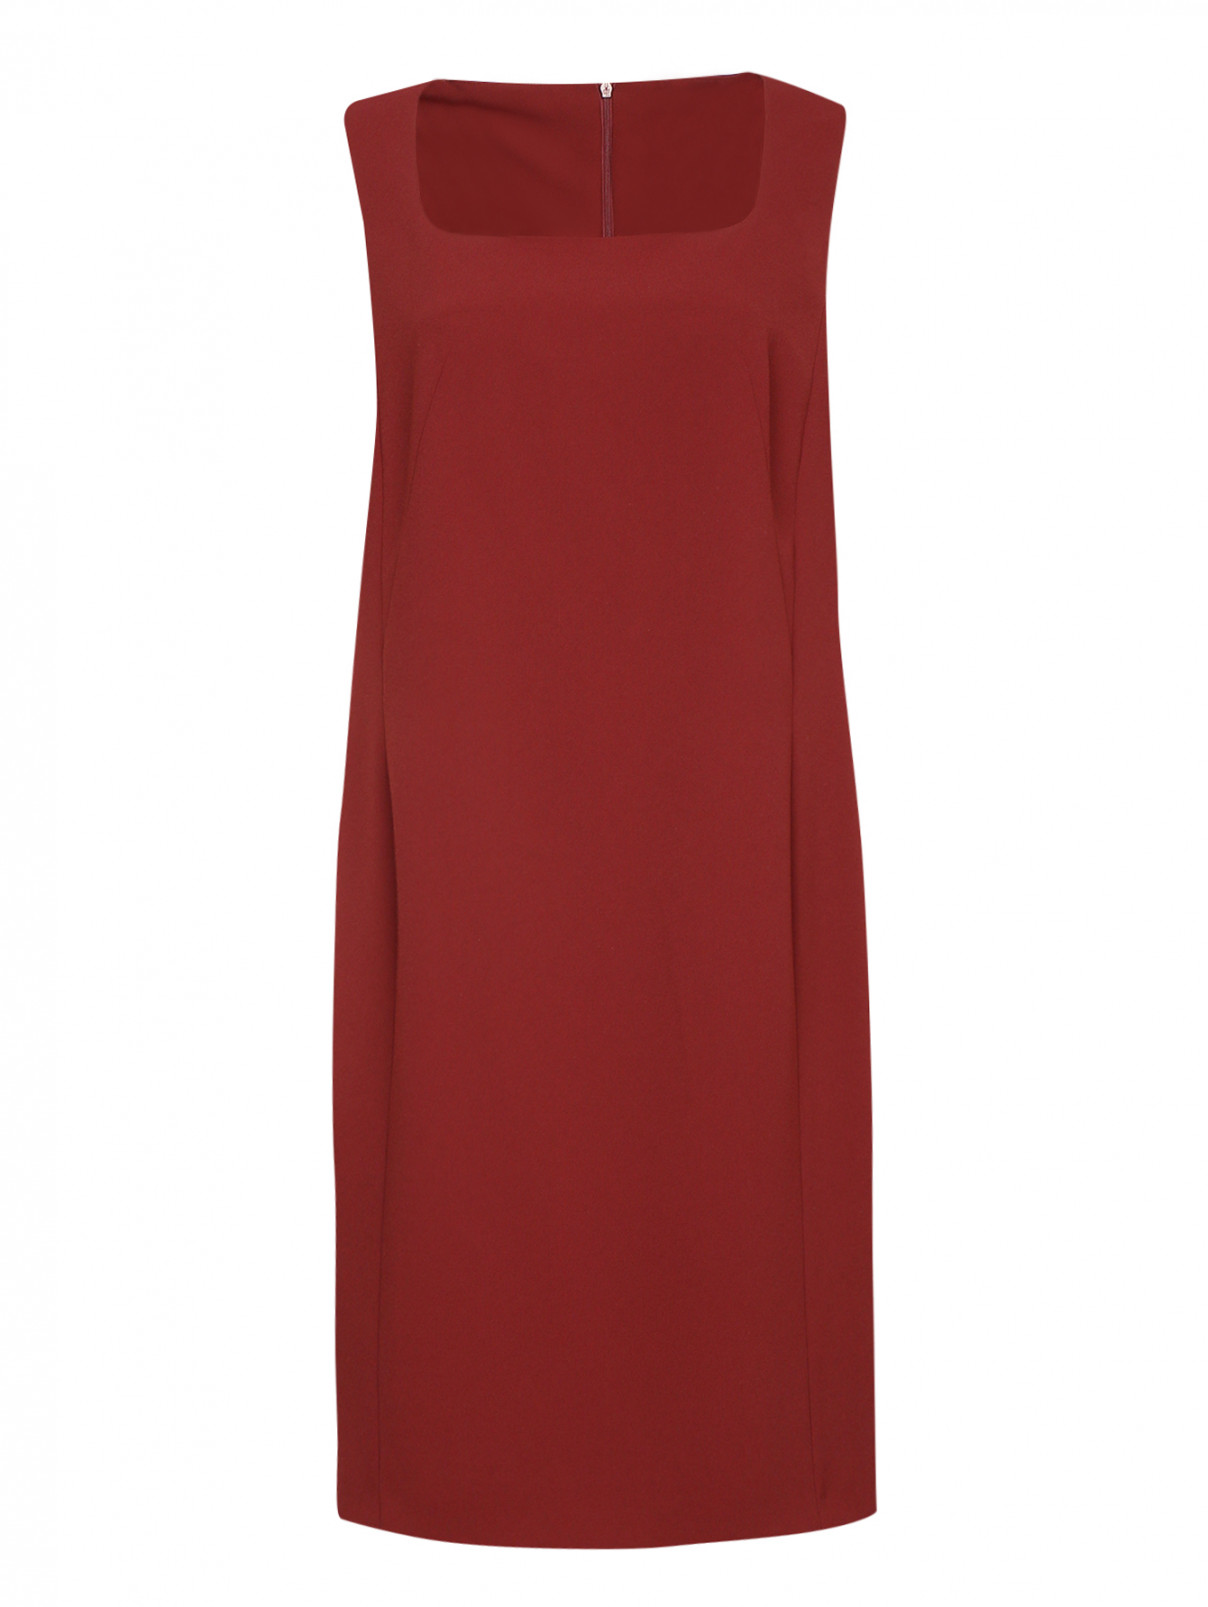 Однотонное платье с рукавами в комплекте Marina Rinaldi  –  Общий вид  – Цвет:  Красный